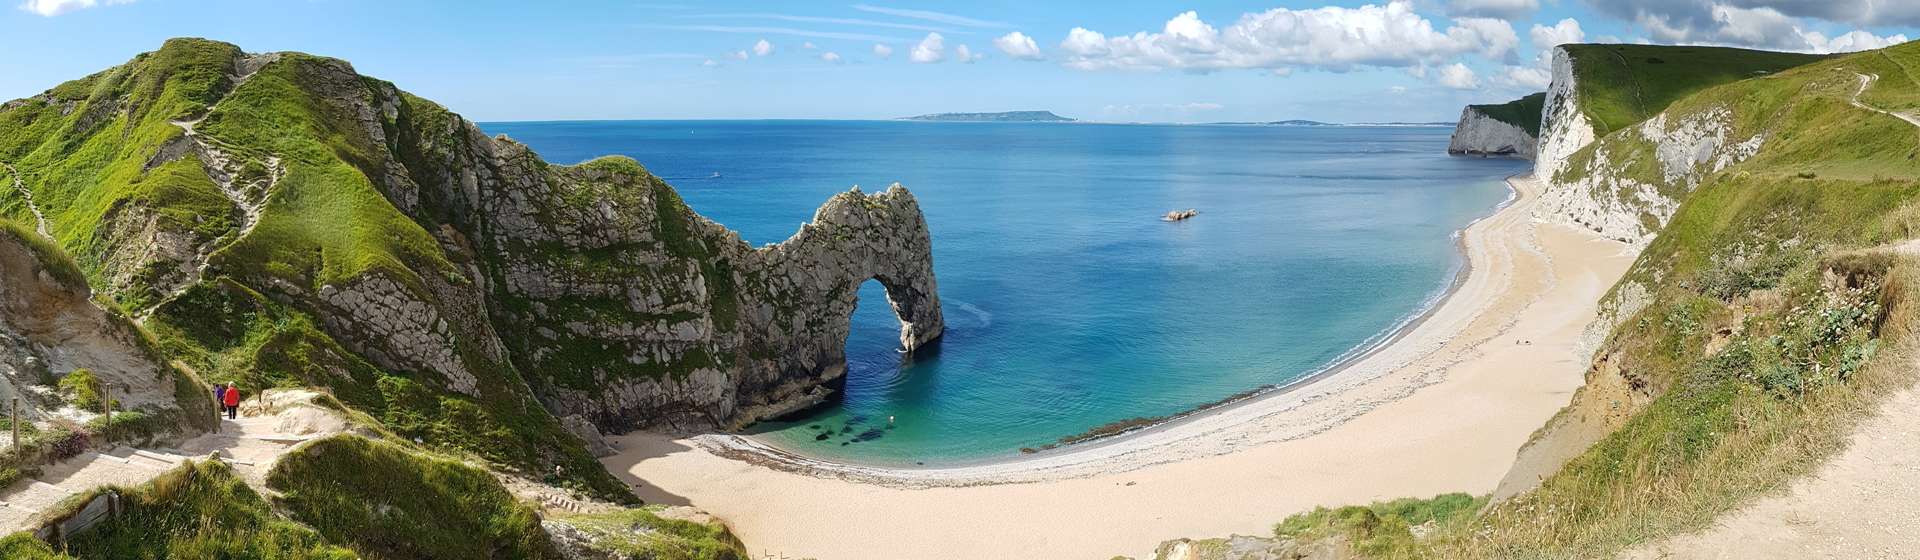 Holidays to Dorset Image